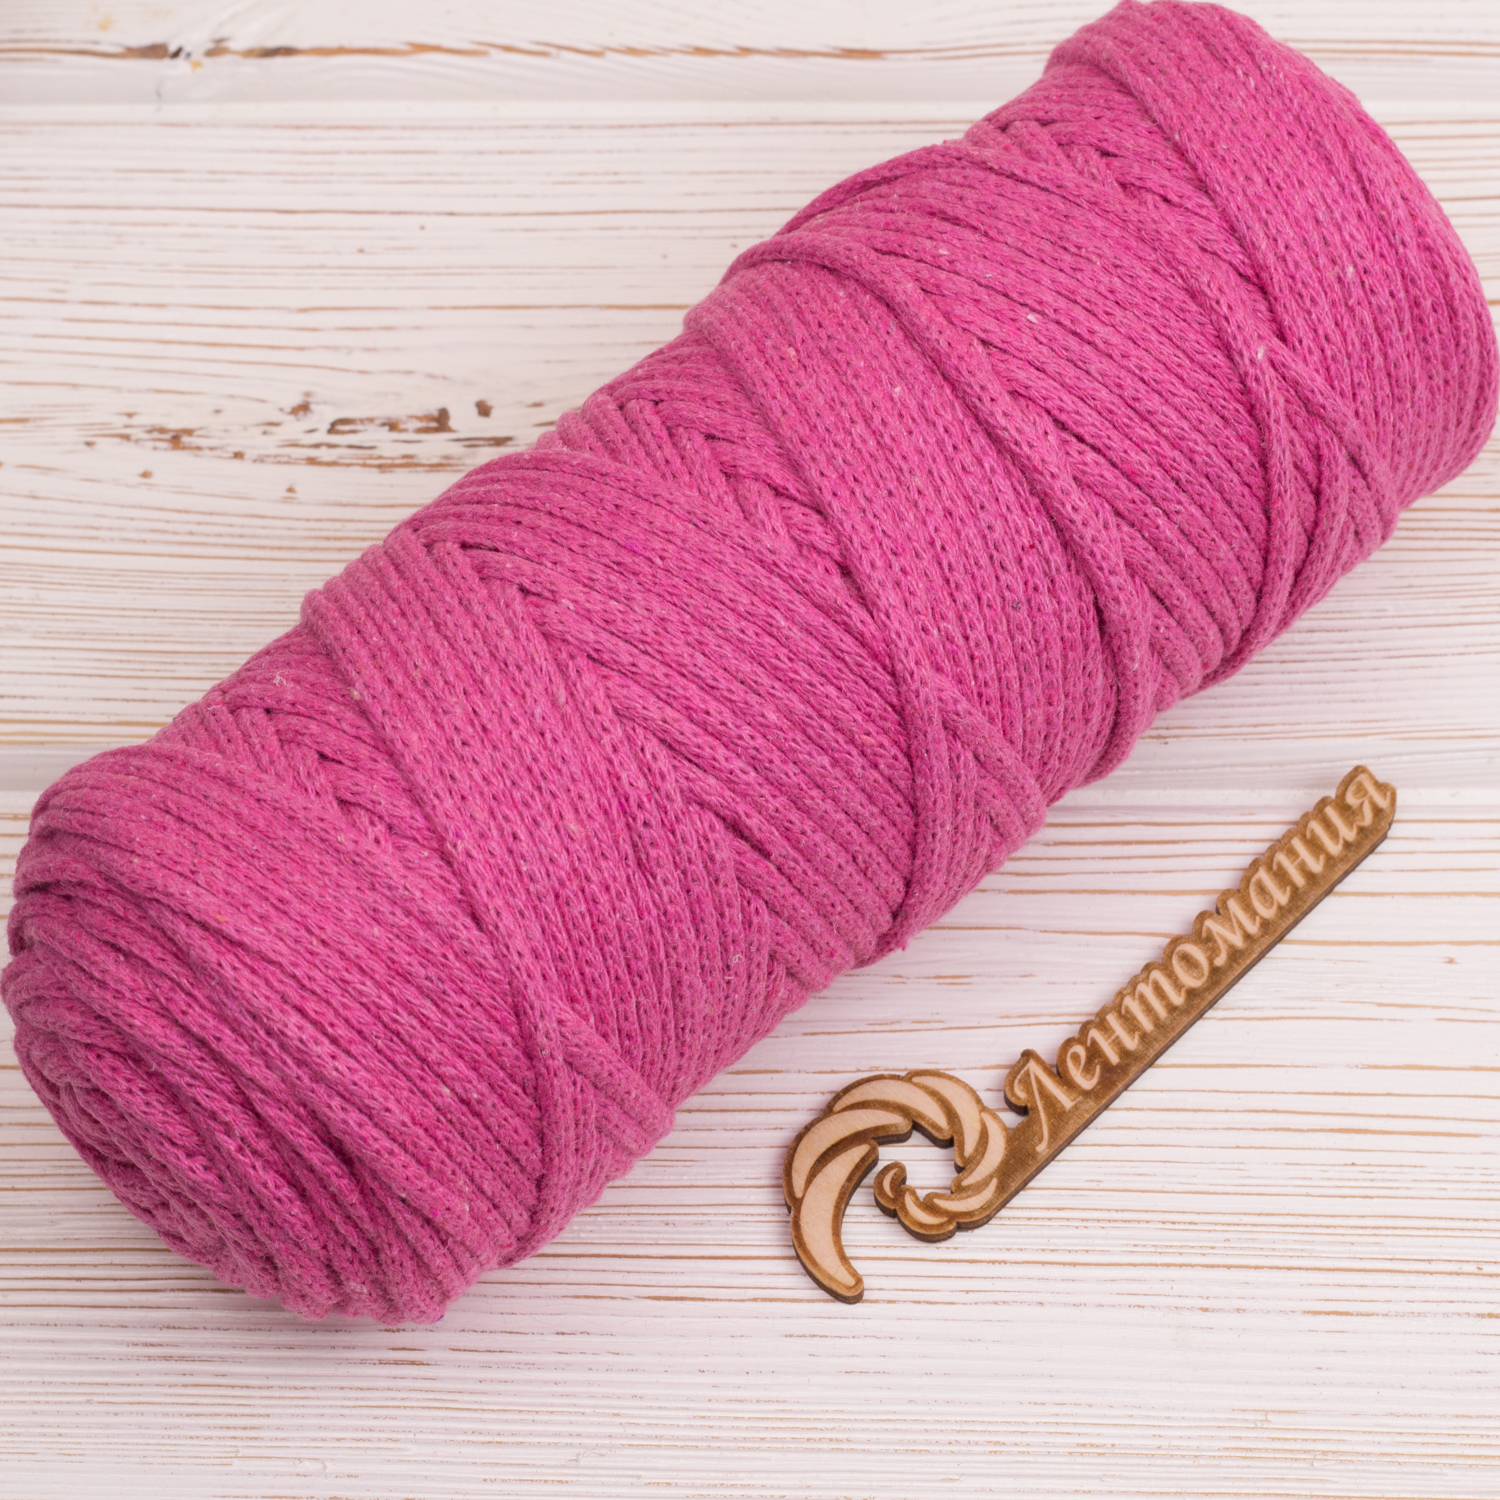 Хлопковый шнур Шнур 4мм Розовый IMG_4298.JPG